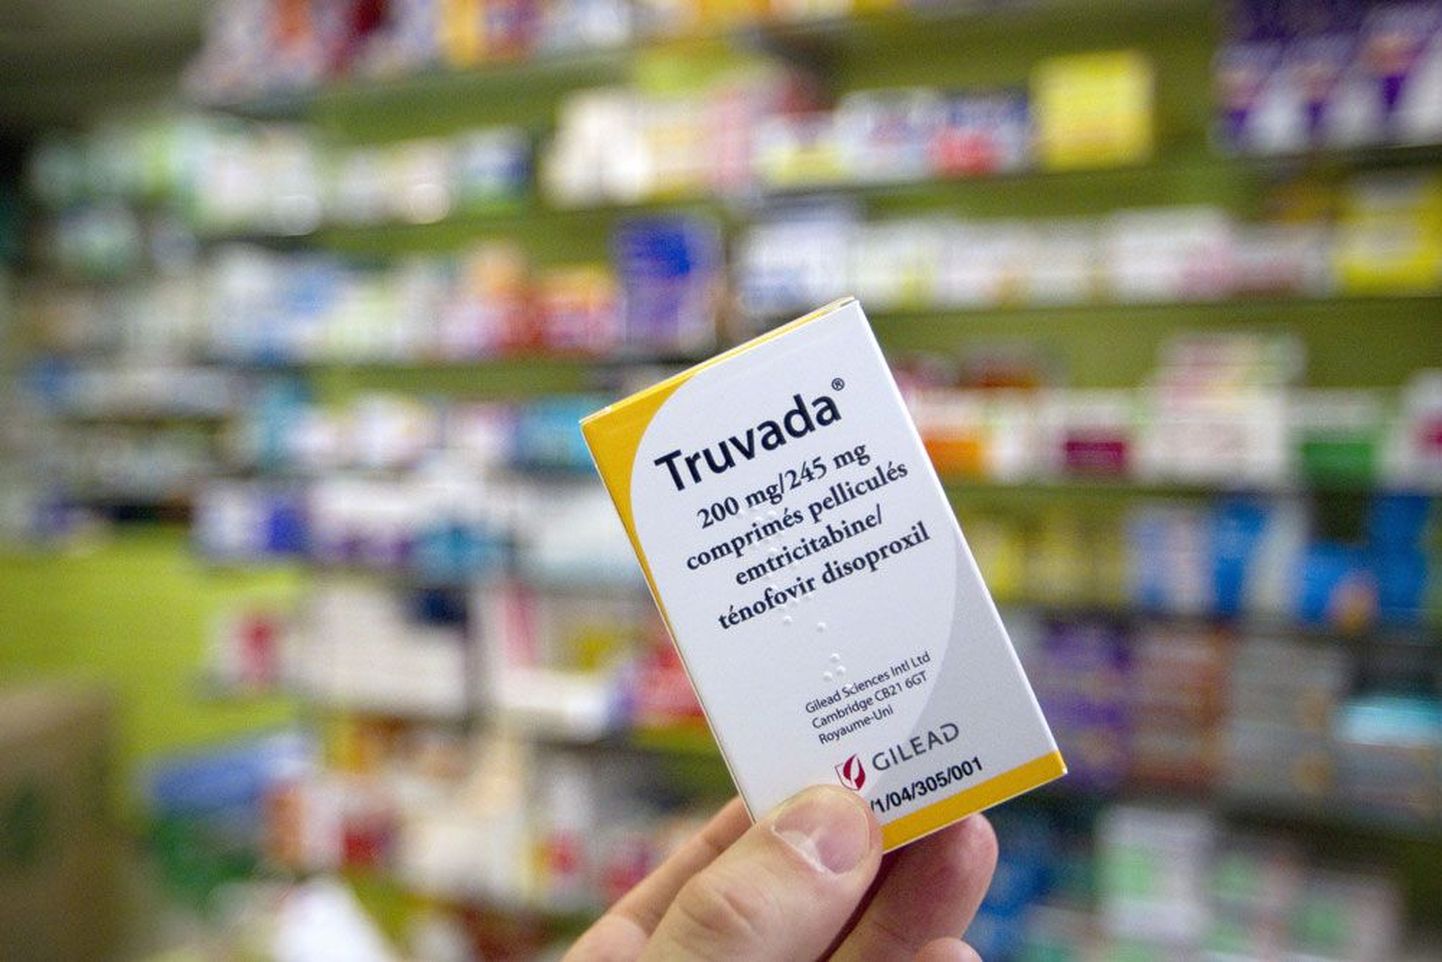 Препарат для профилактики ВИЧ-инфекции Truvada продается в одной из аптек Парижа.